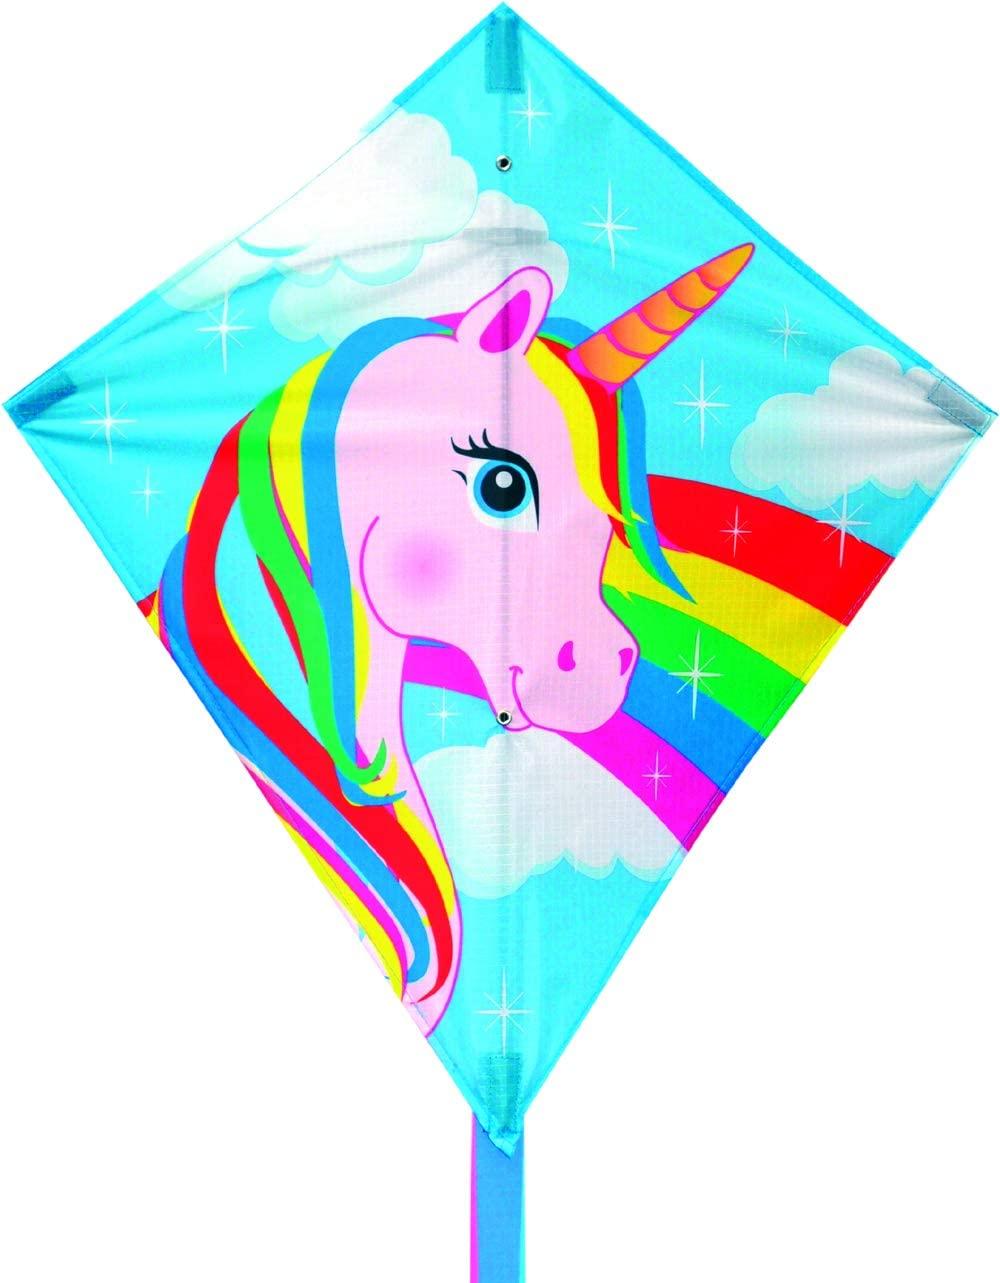 Diamond-shaped kite with a Unicorn head with a rainbow mane on a blue sky background.